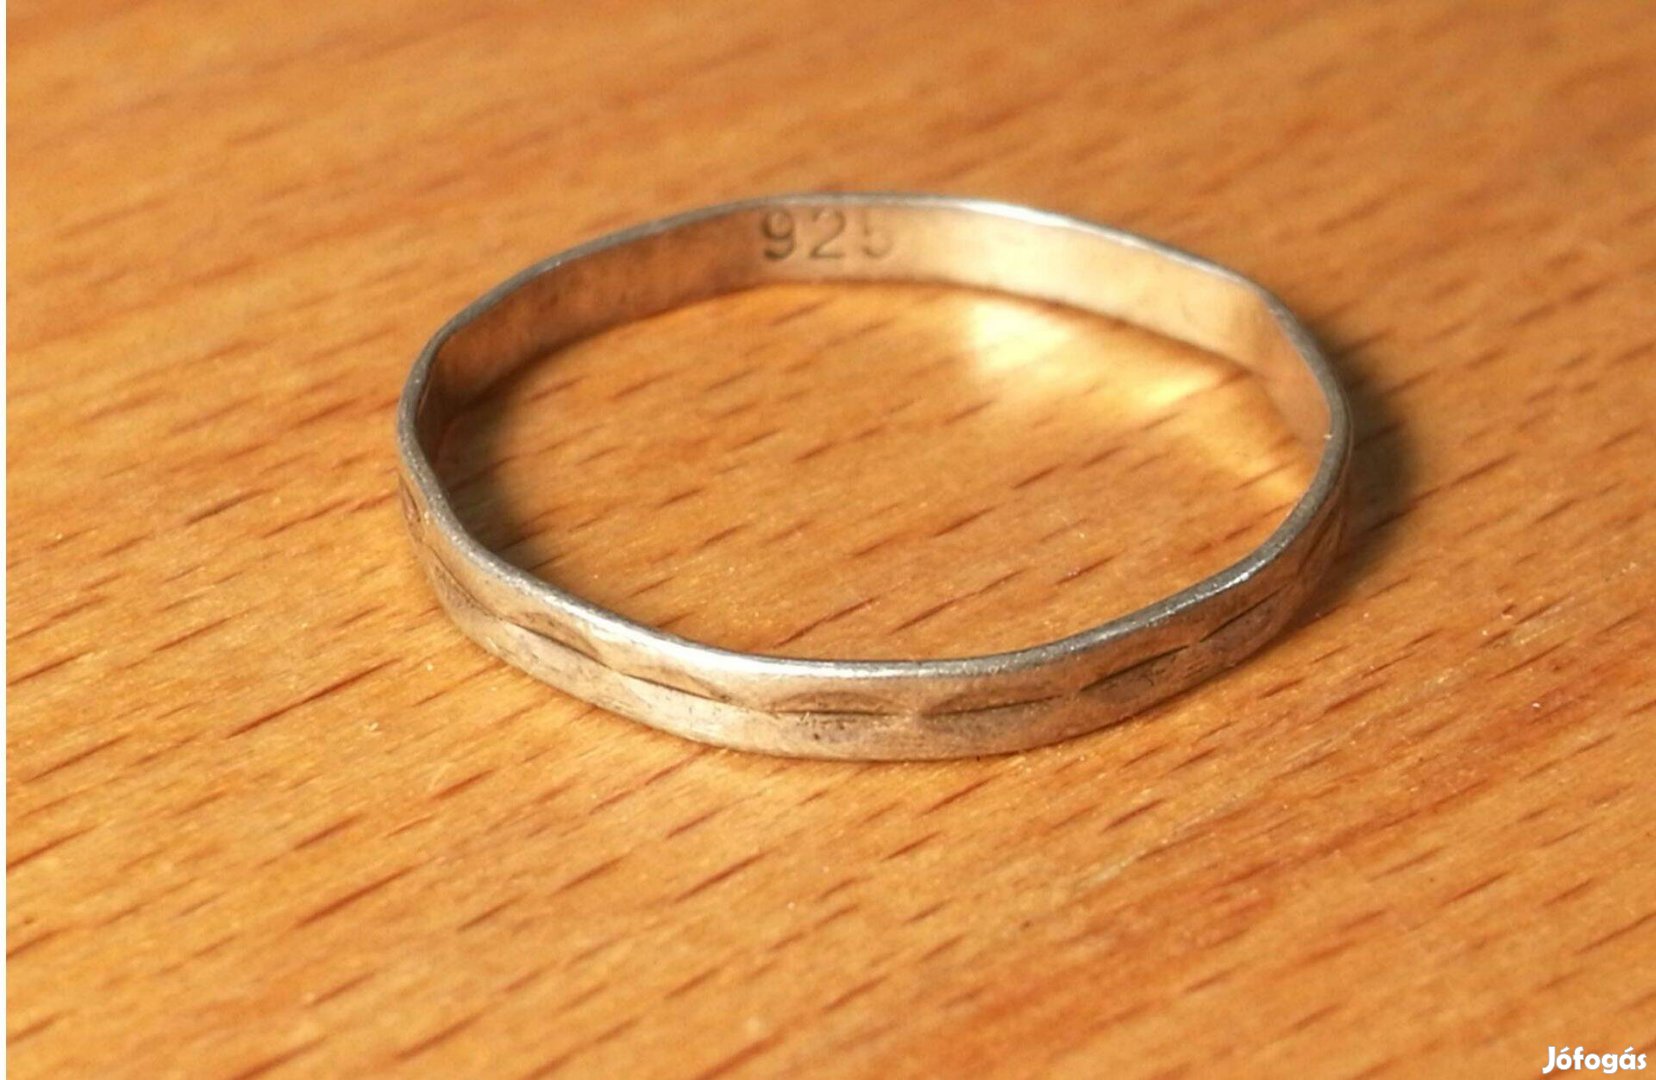 Szép kidolgozású, csöppnyi ezüst gyűrű 925 (belső átmérője 1,55cm)